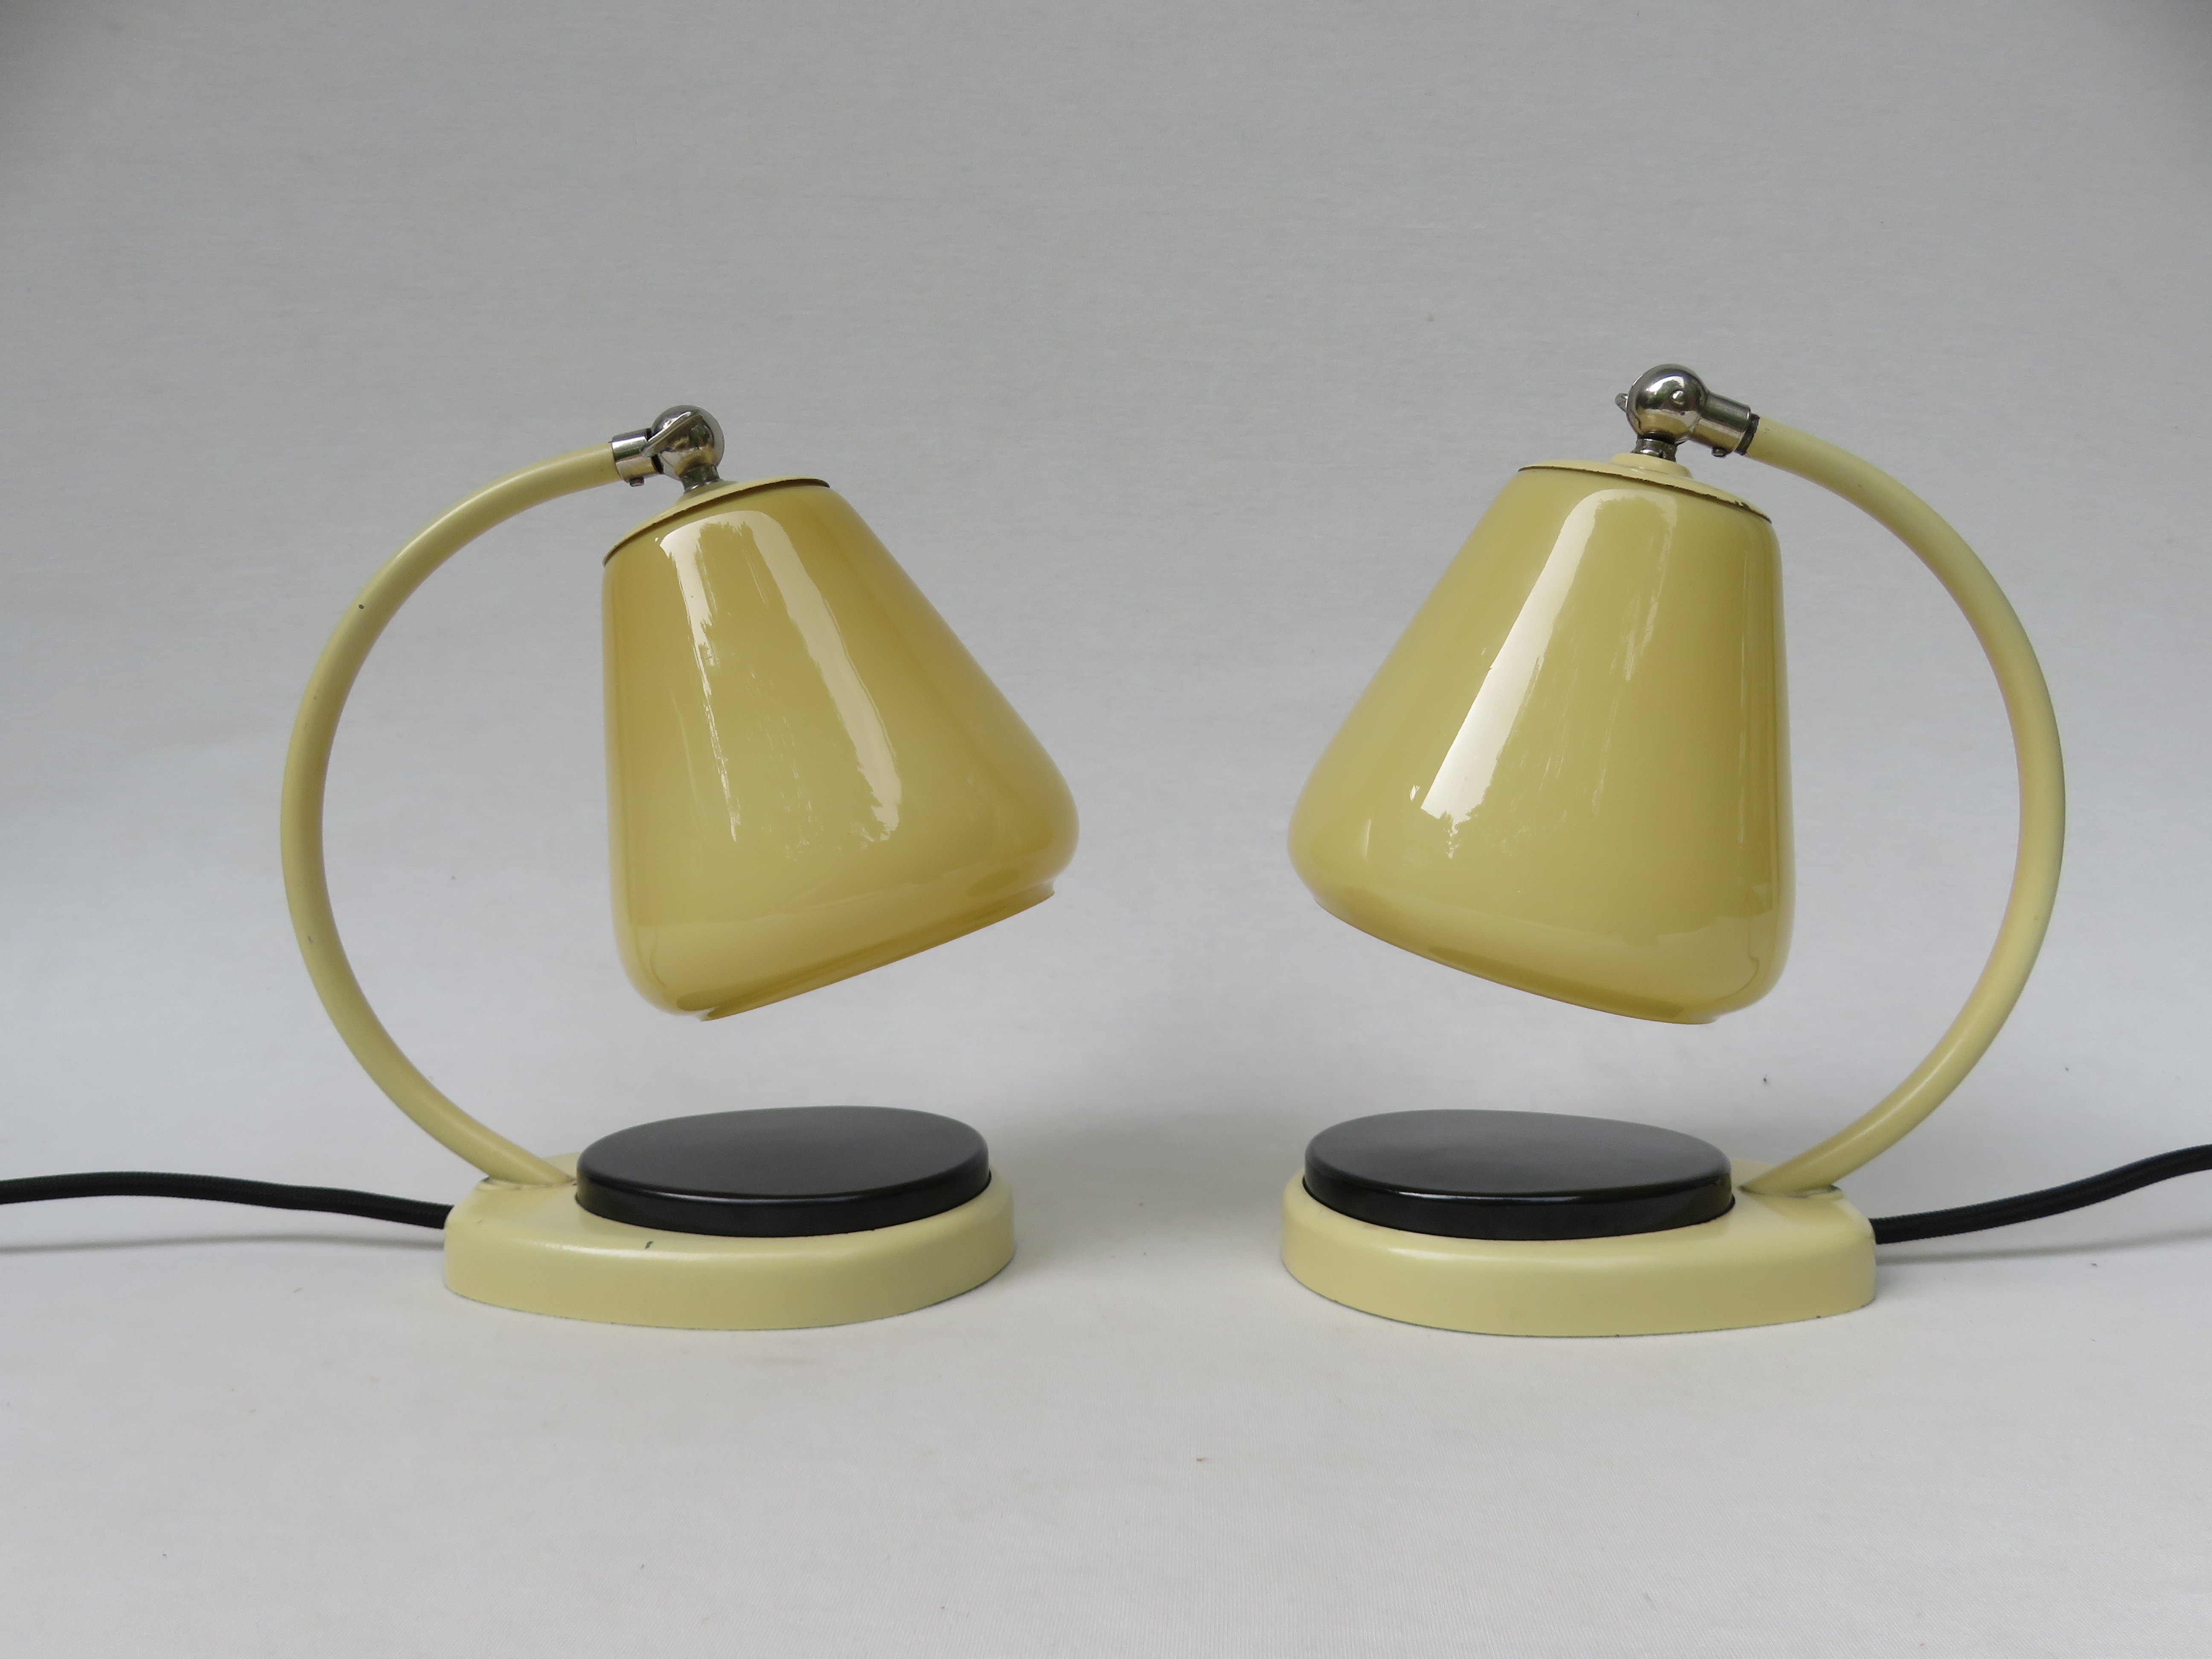 NT12 - 1 Paar Nachttischleuchten, Tastlicht, 40er Jahre, Entwurf: Marianne Brandt, beige lackiert, Taster schwarzes Bakelit, Glasschirme Überfangglas beige